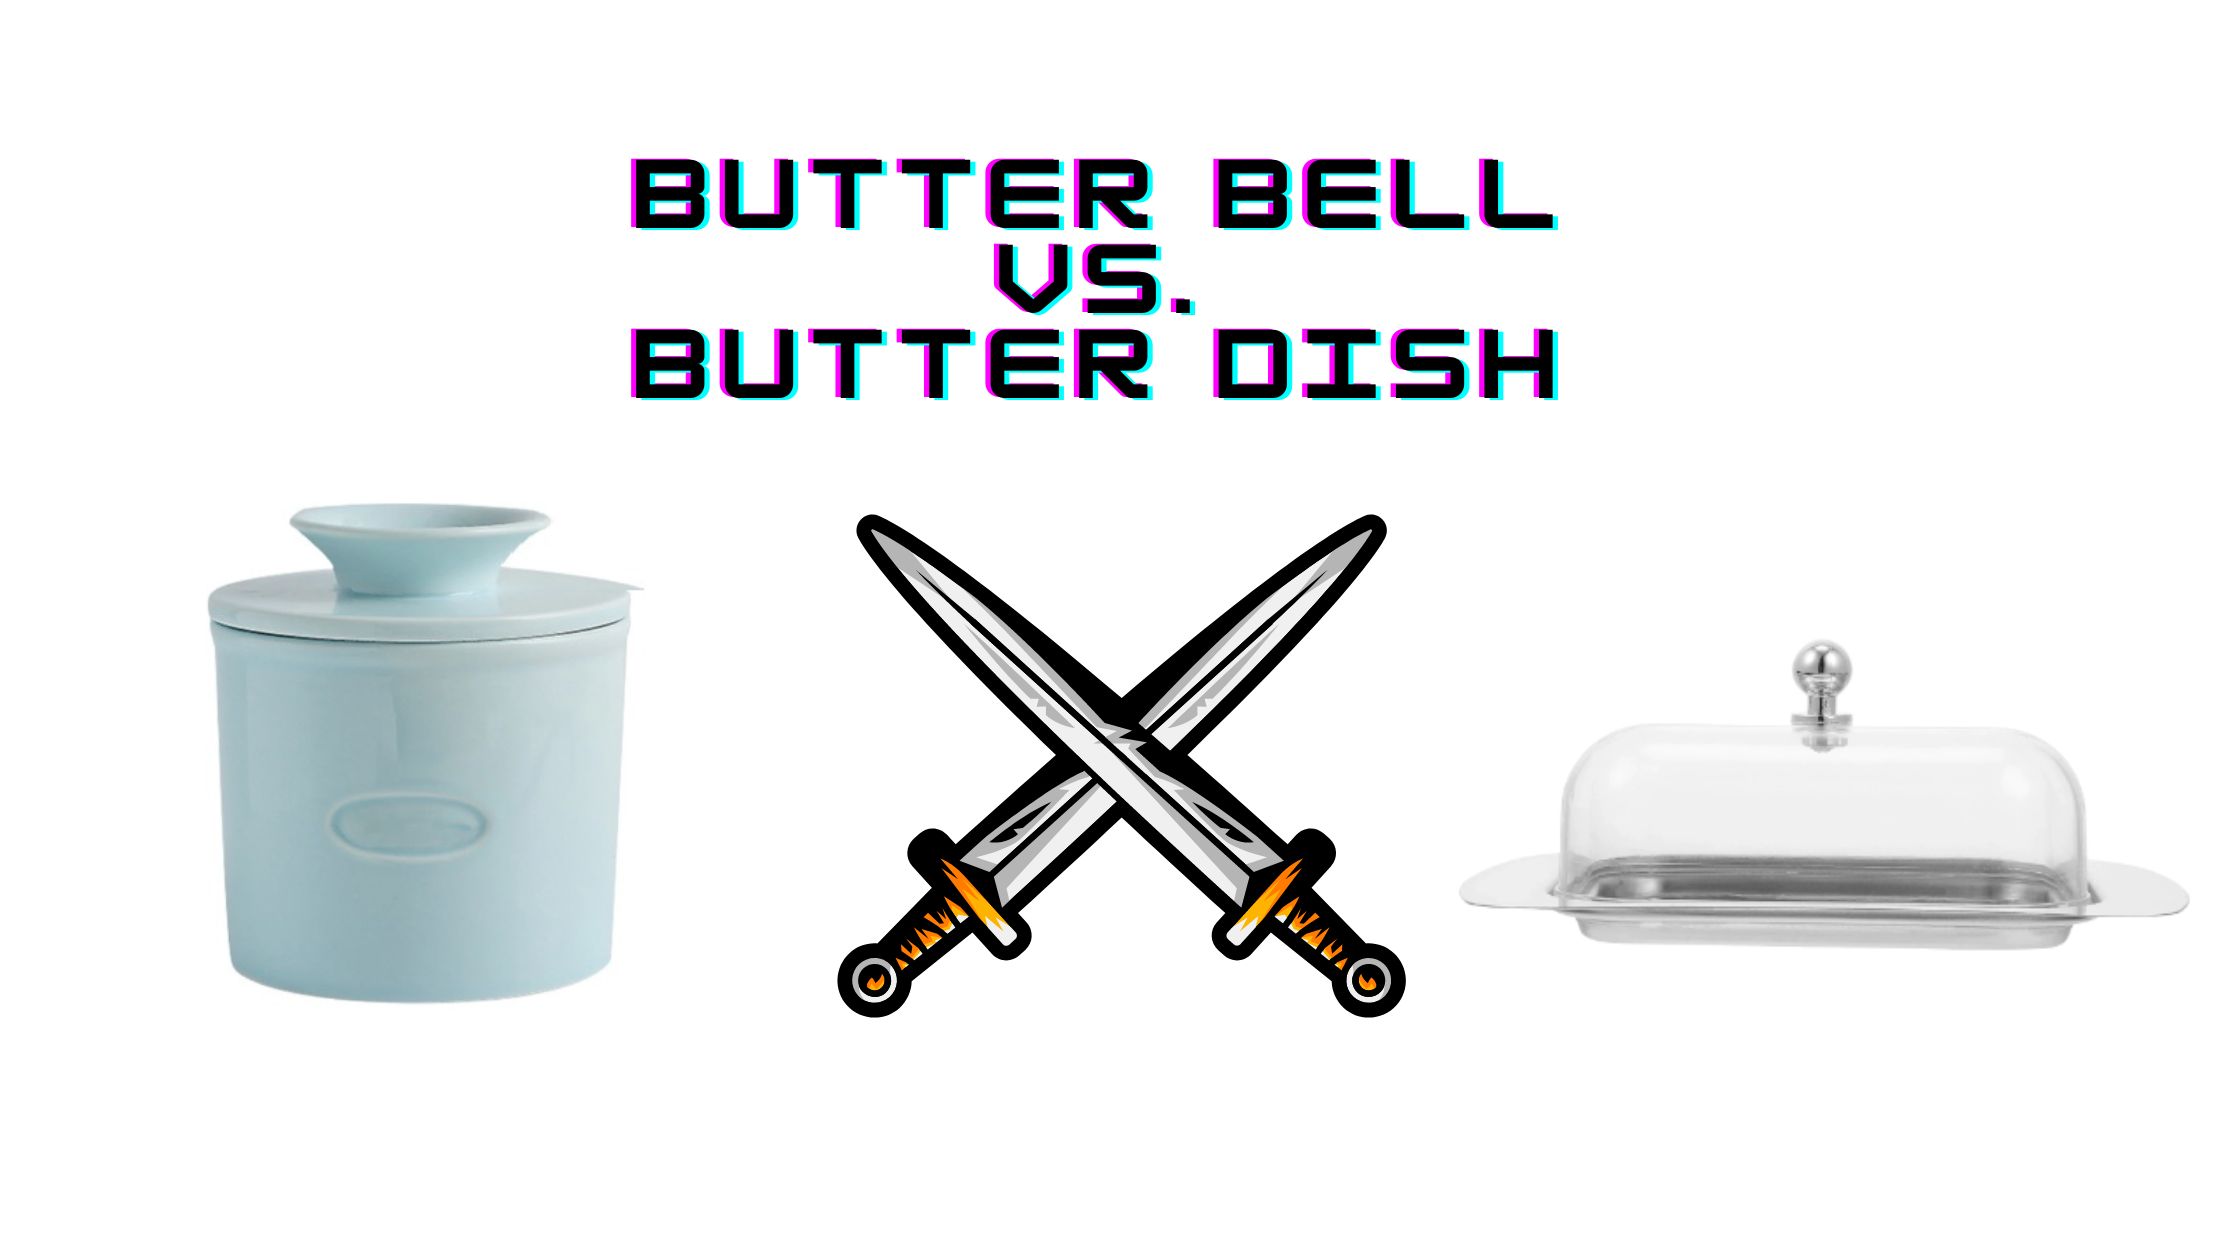 Butter Bell vs. Butter Dish